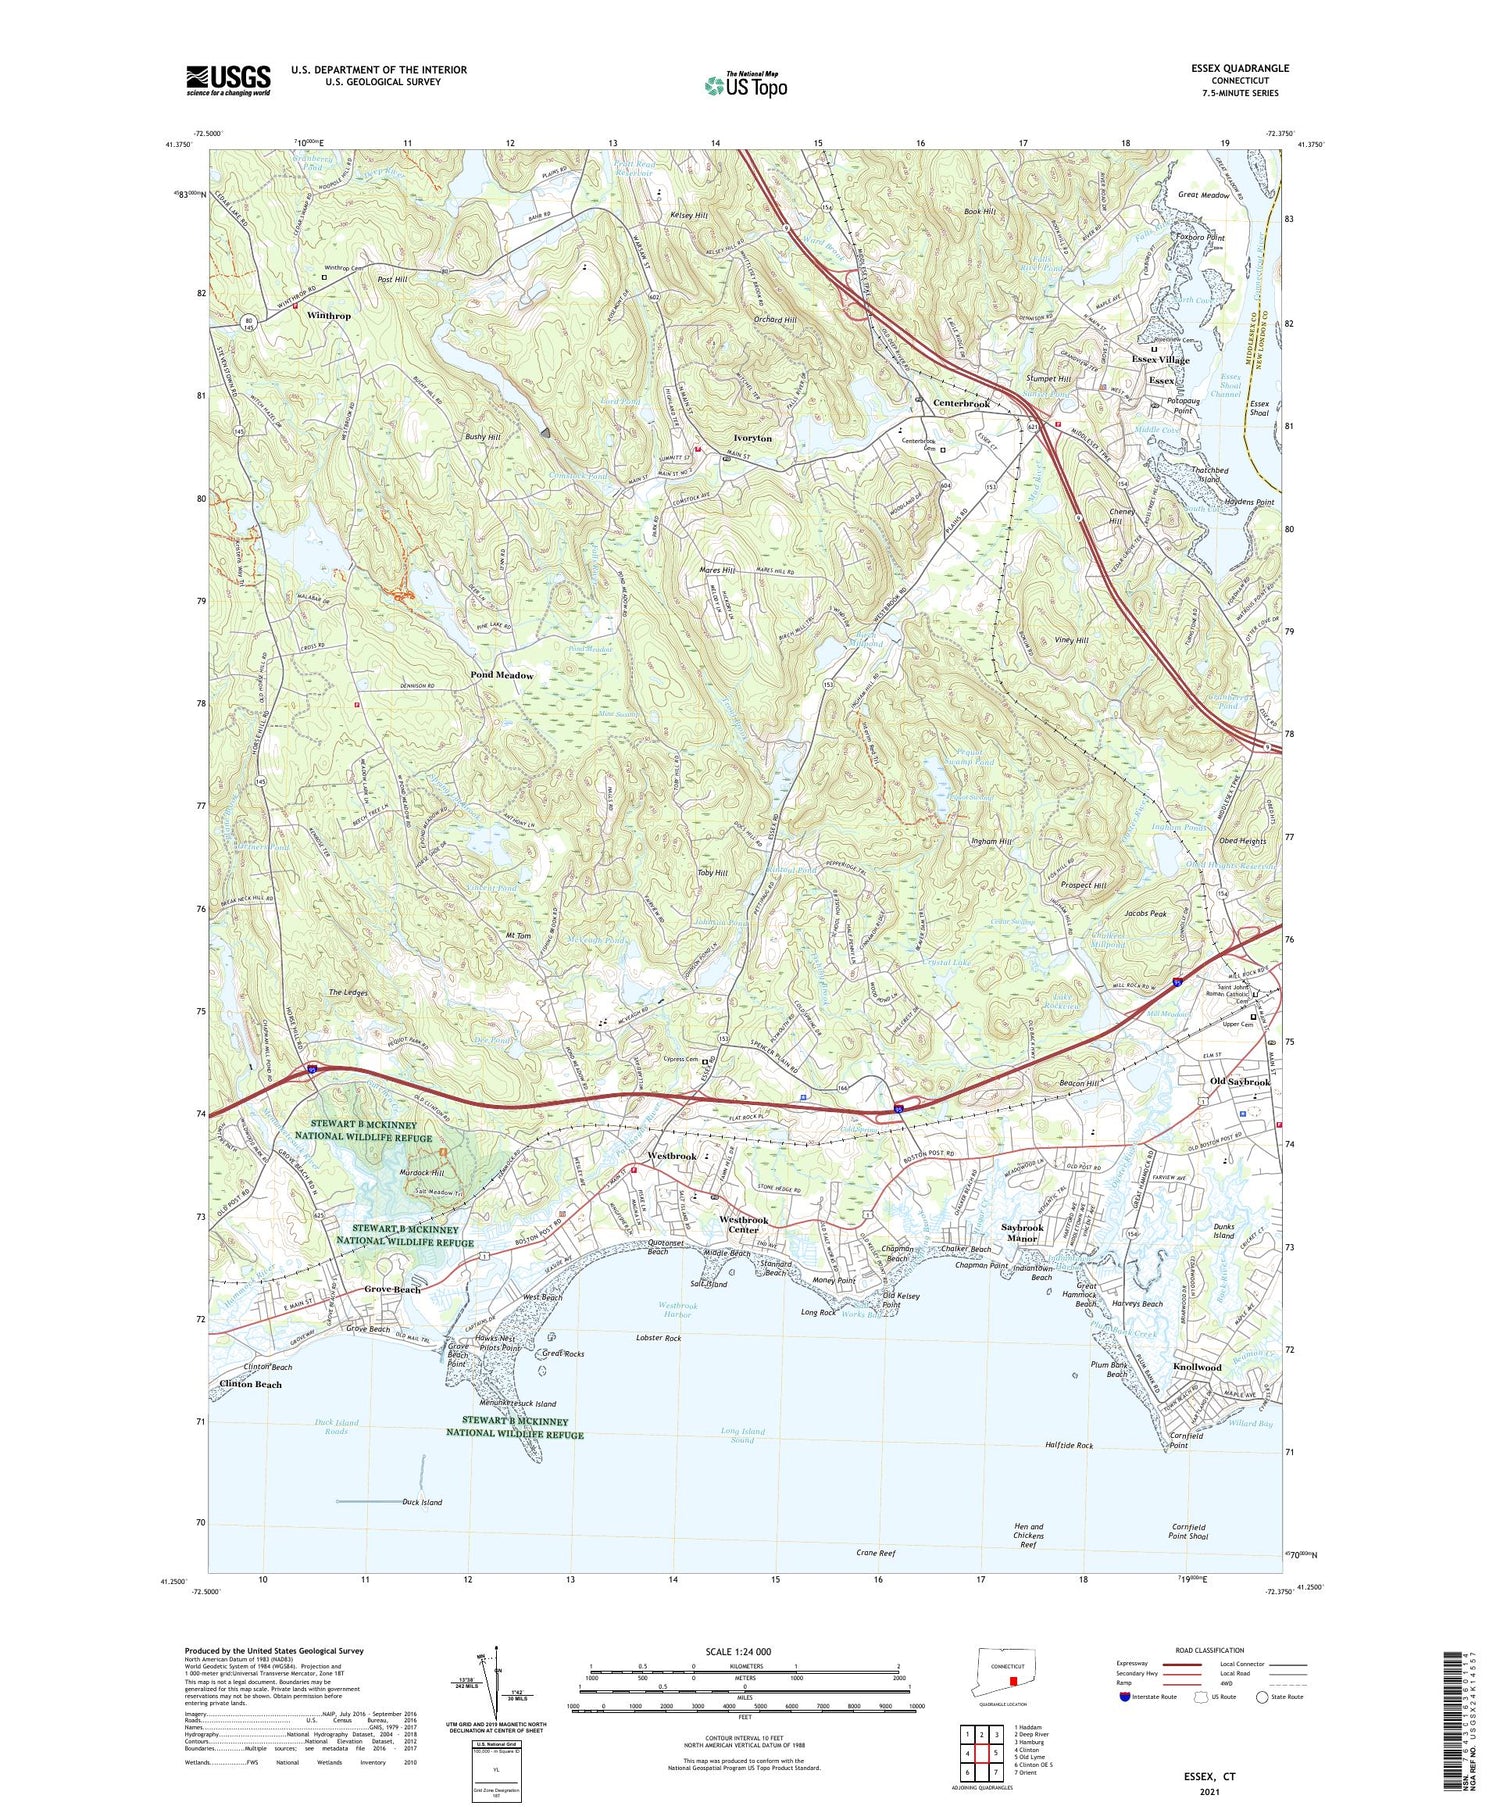 Essex Connecticut US Topo Map Image